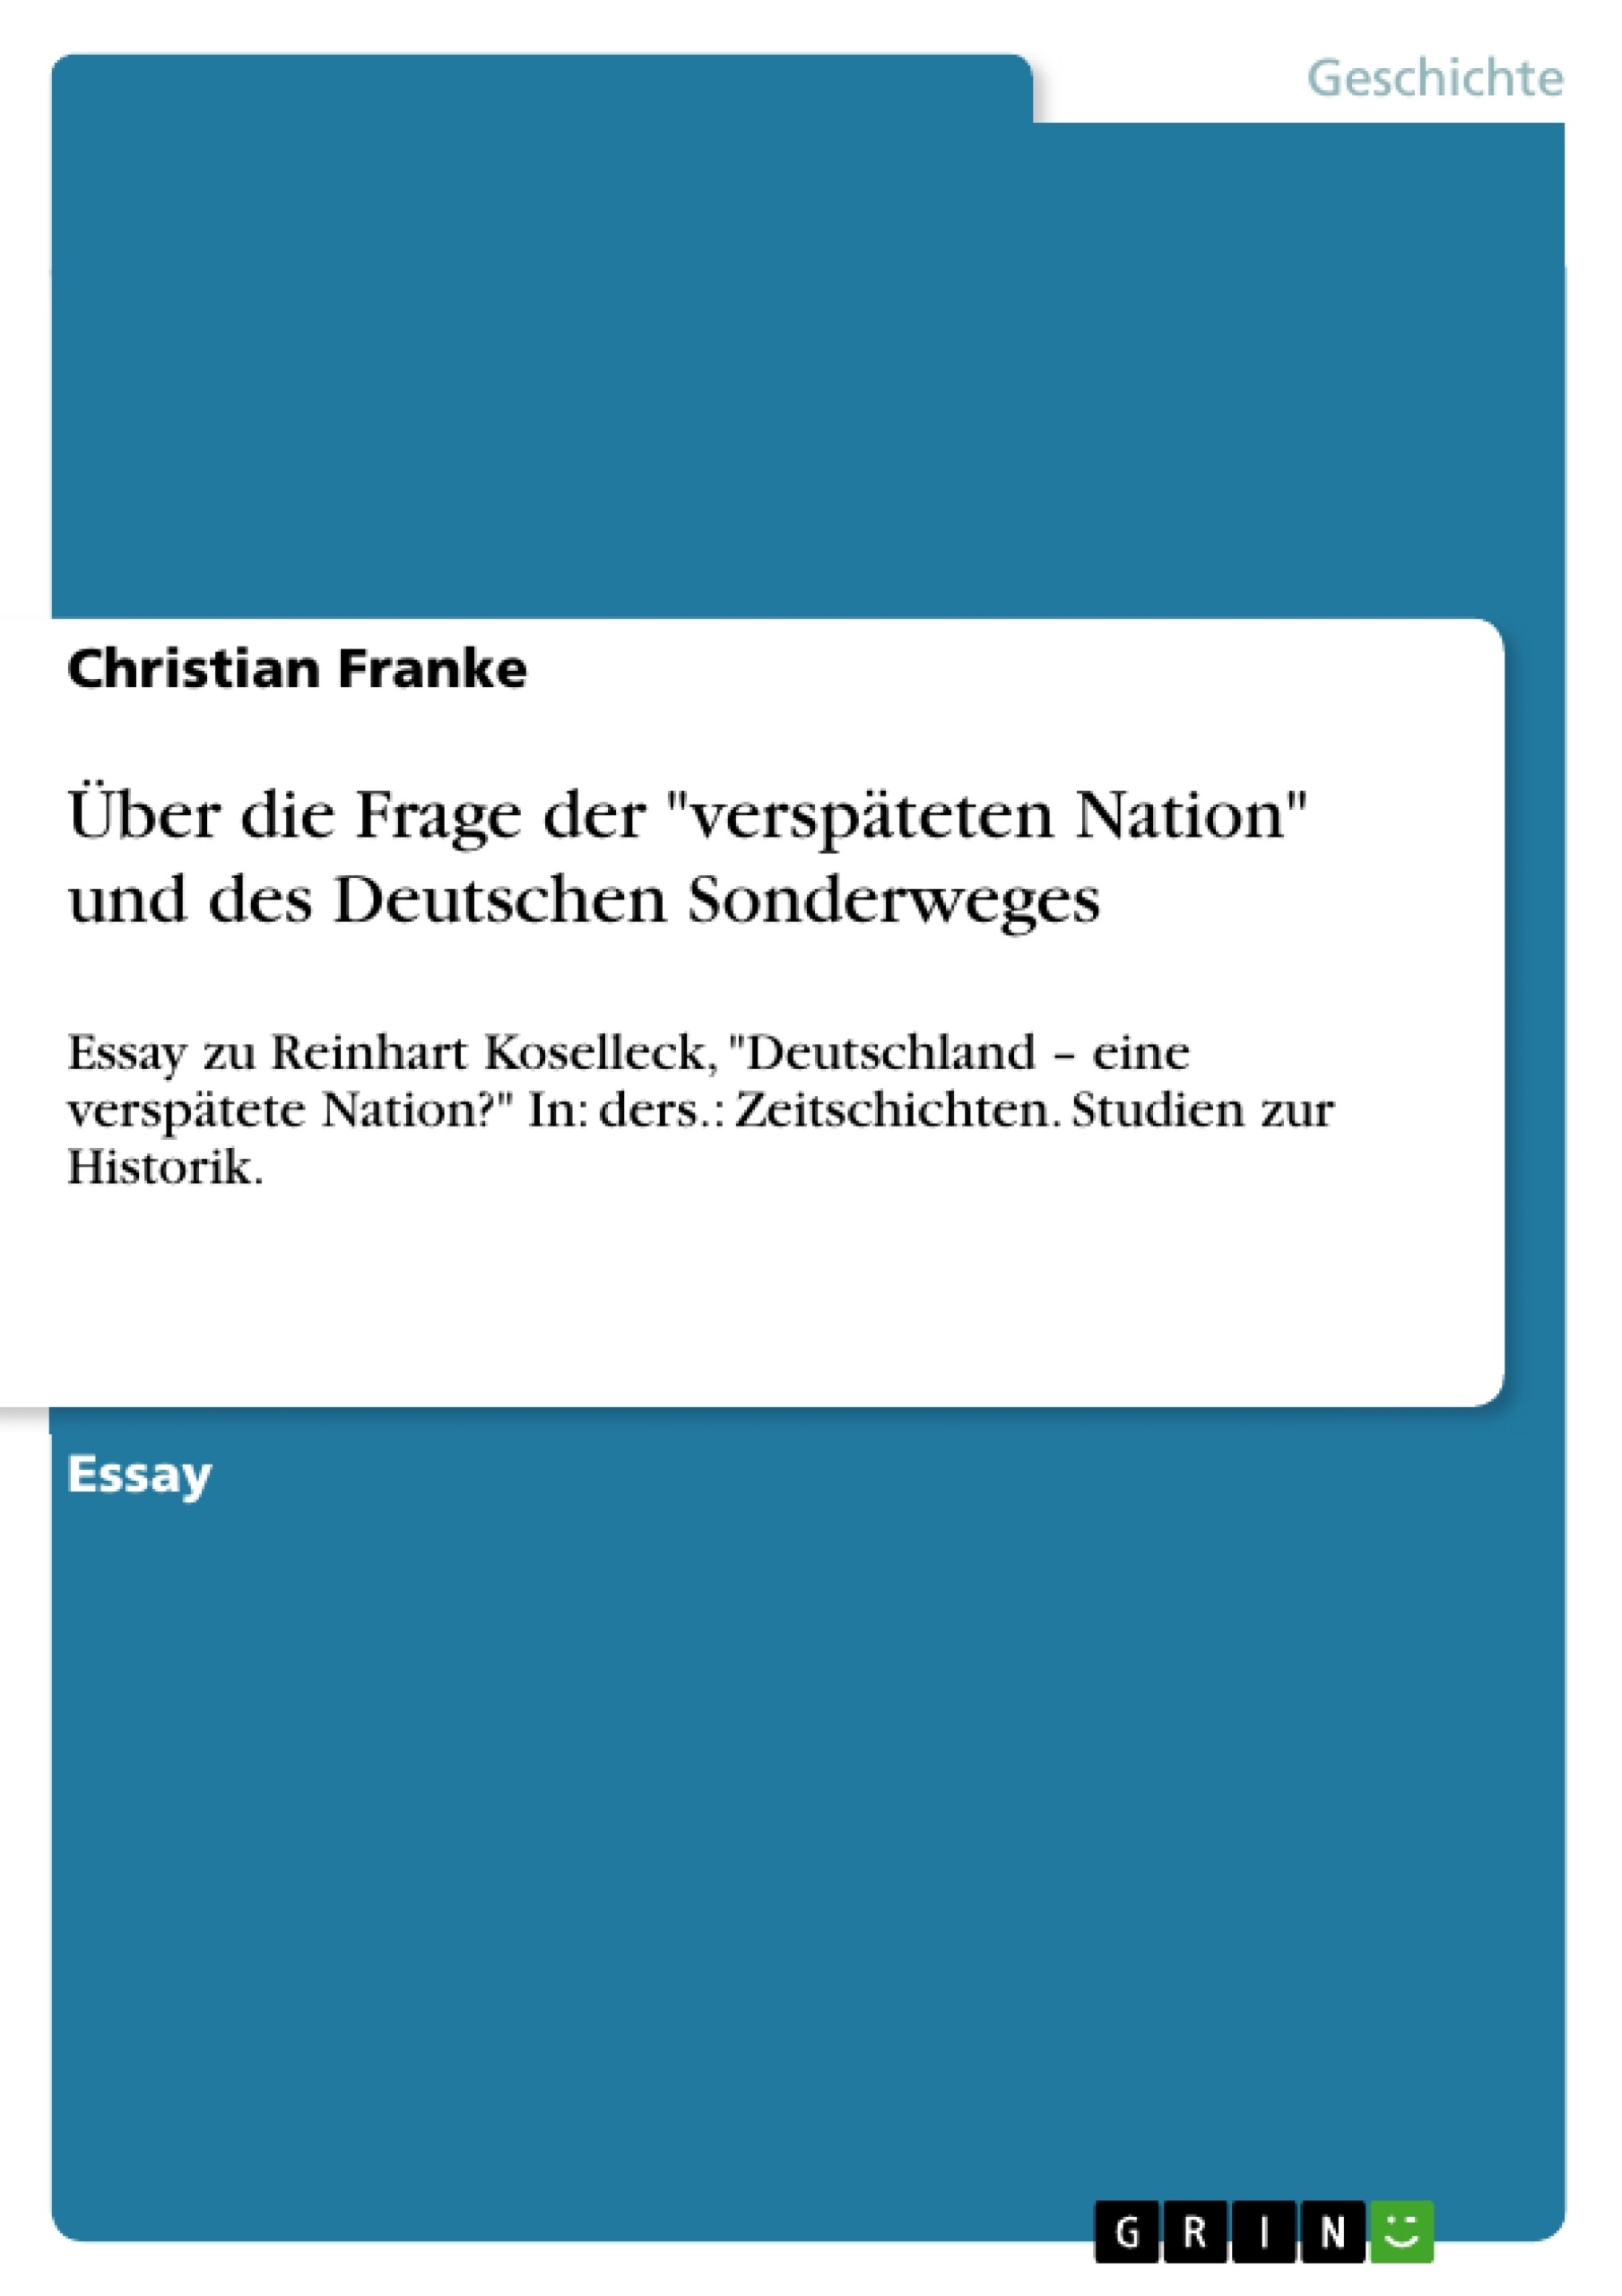 Title: Über die Frage der "verspäteten Nation" und des Deutschen Sonderweges